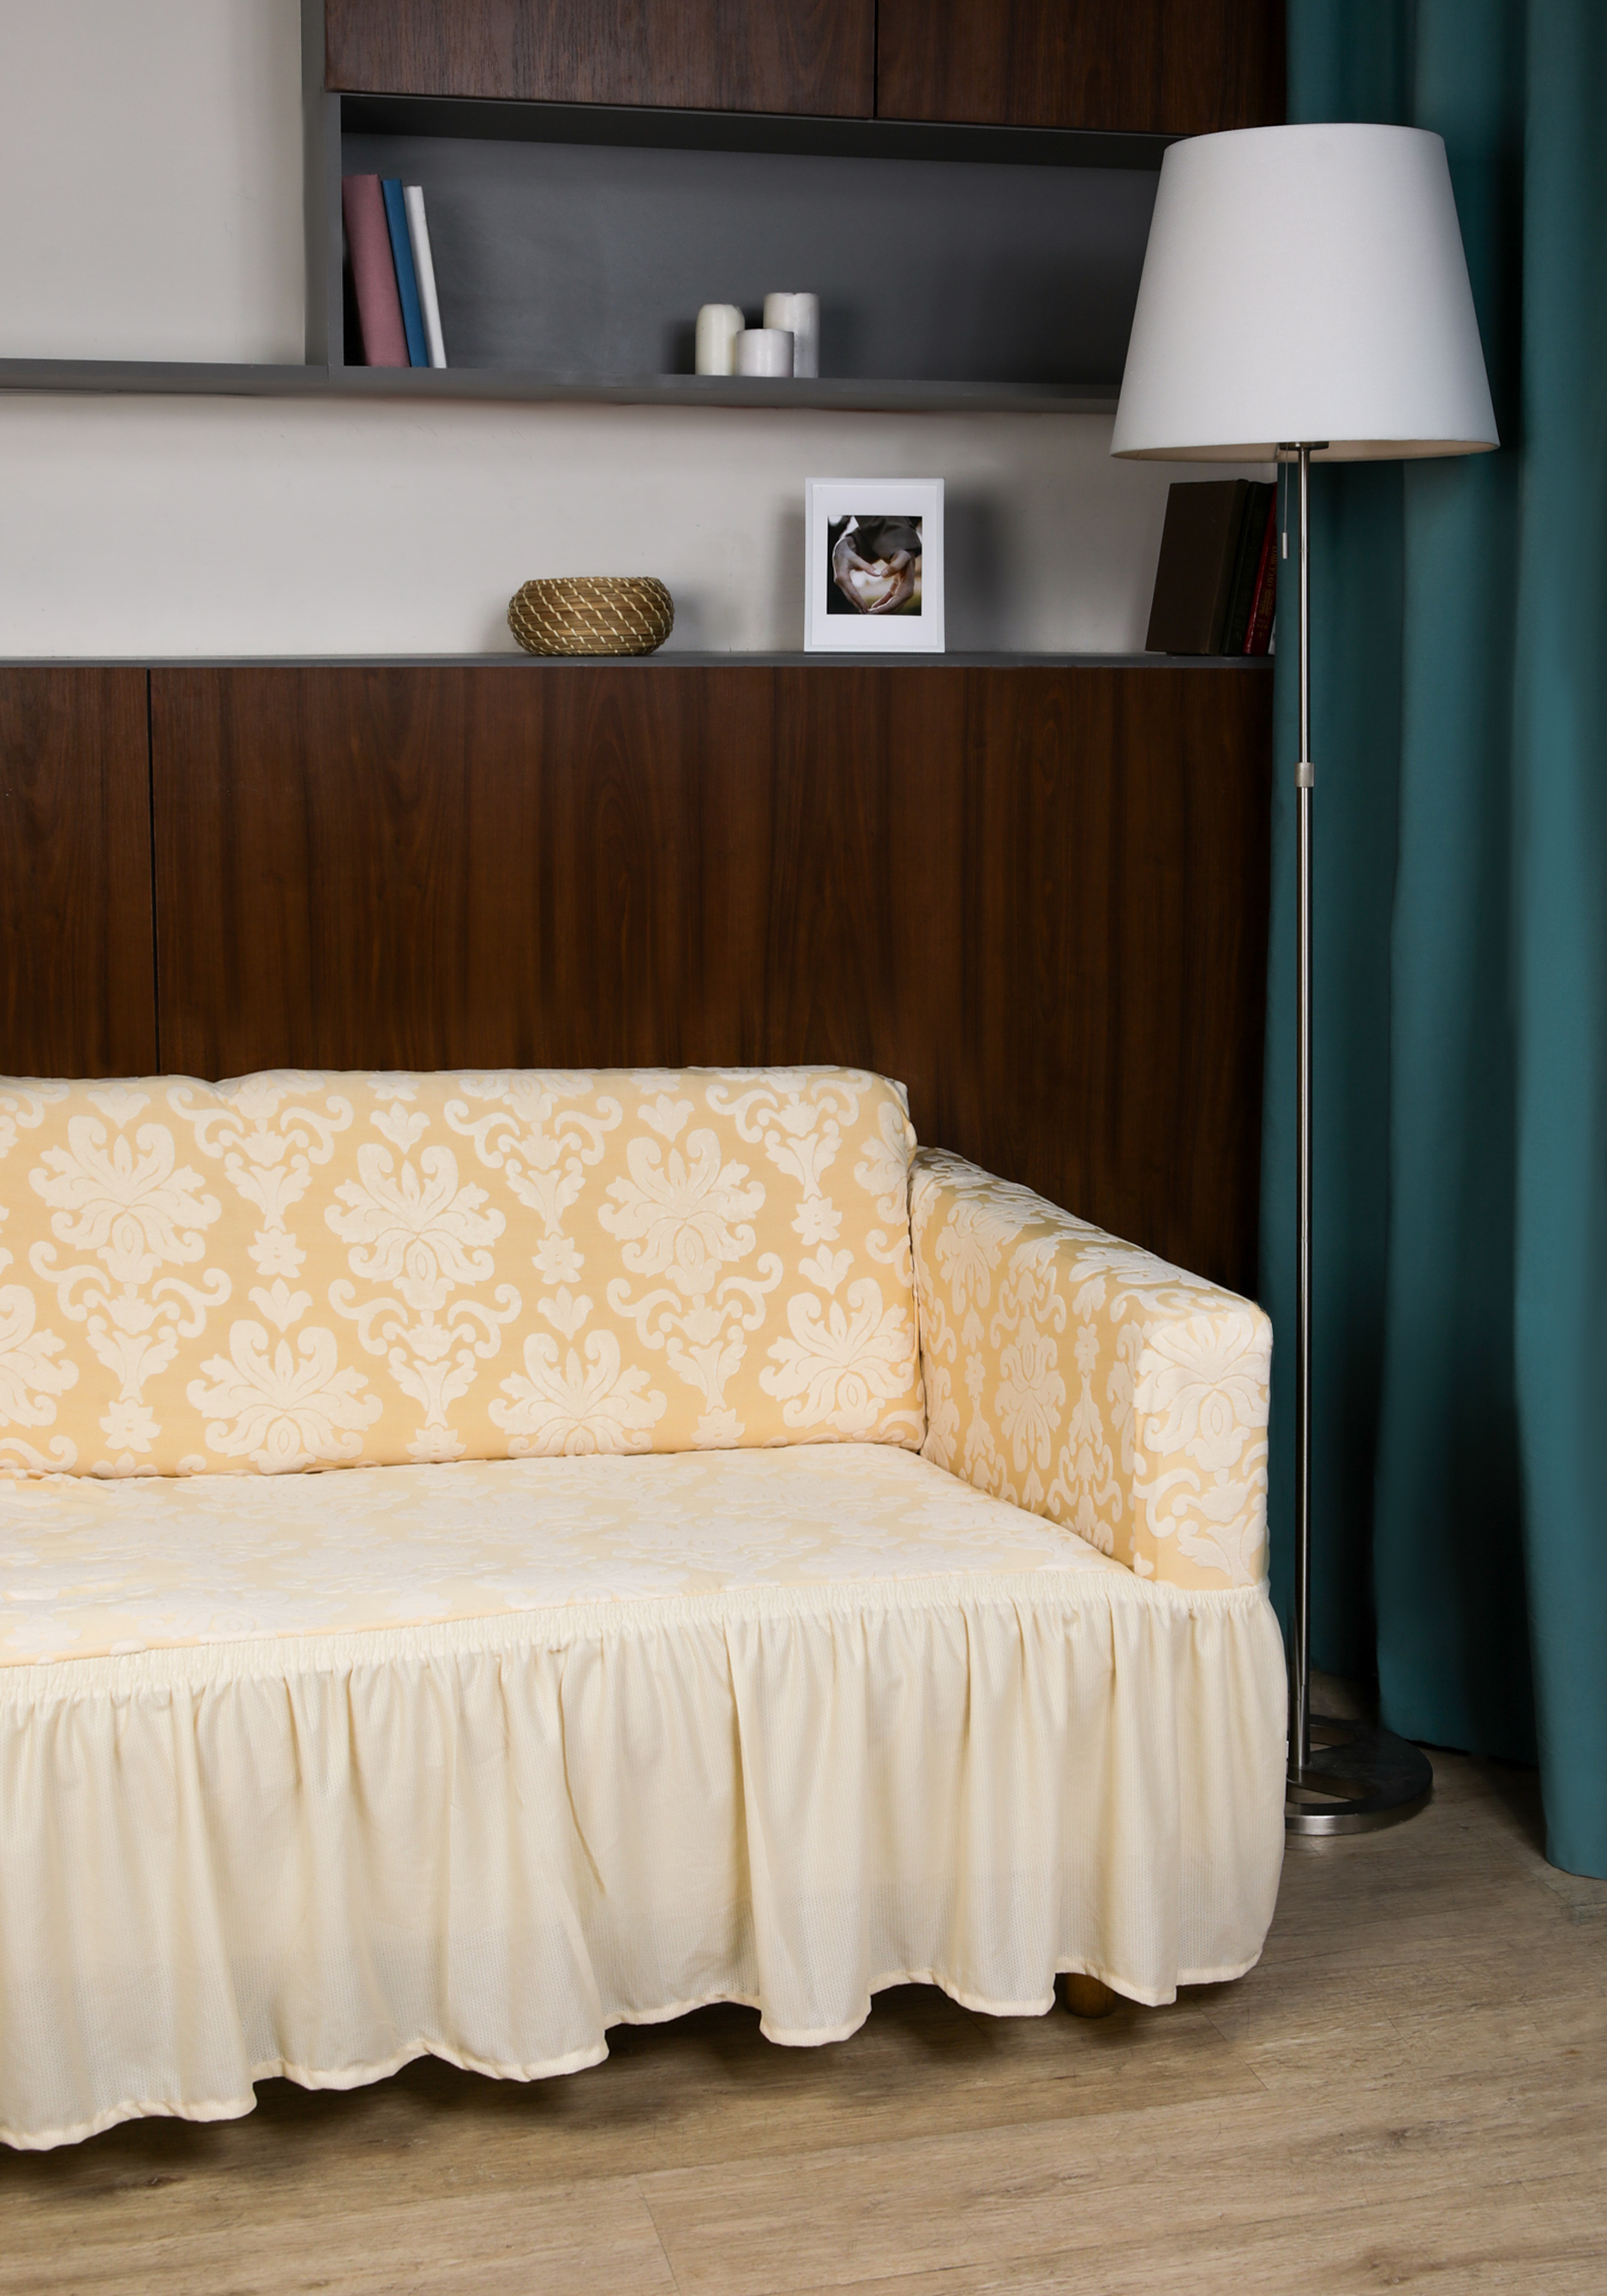 Чехол для дивана с оборкой чехол для дивана в клетку парижской башни эластичный чехол для дивана винтажный чехол для дивана в гостиную защита для дивана